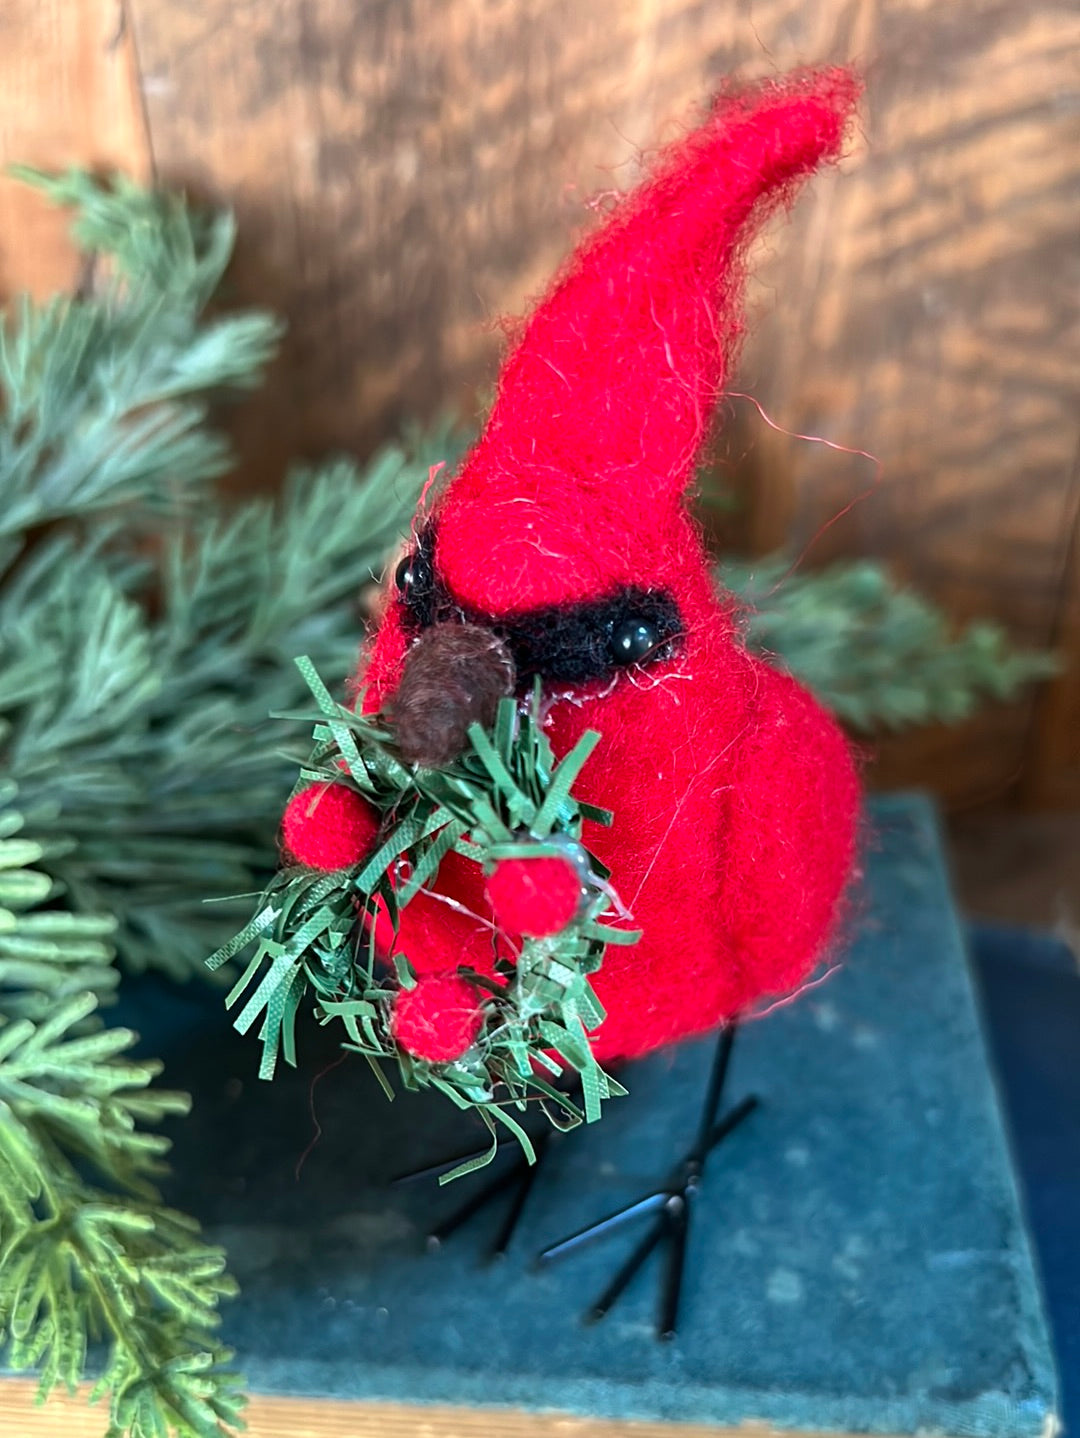 Felt Red Cardinal with Wreath